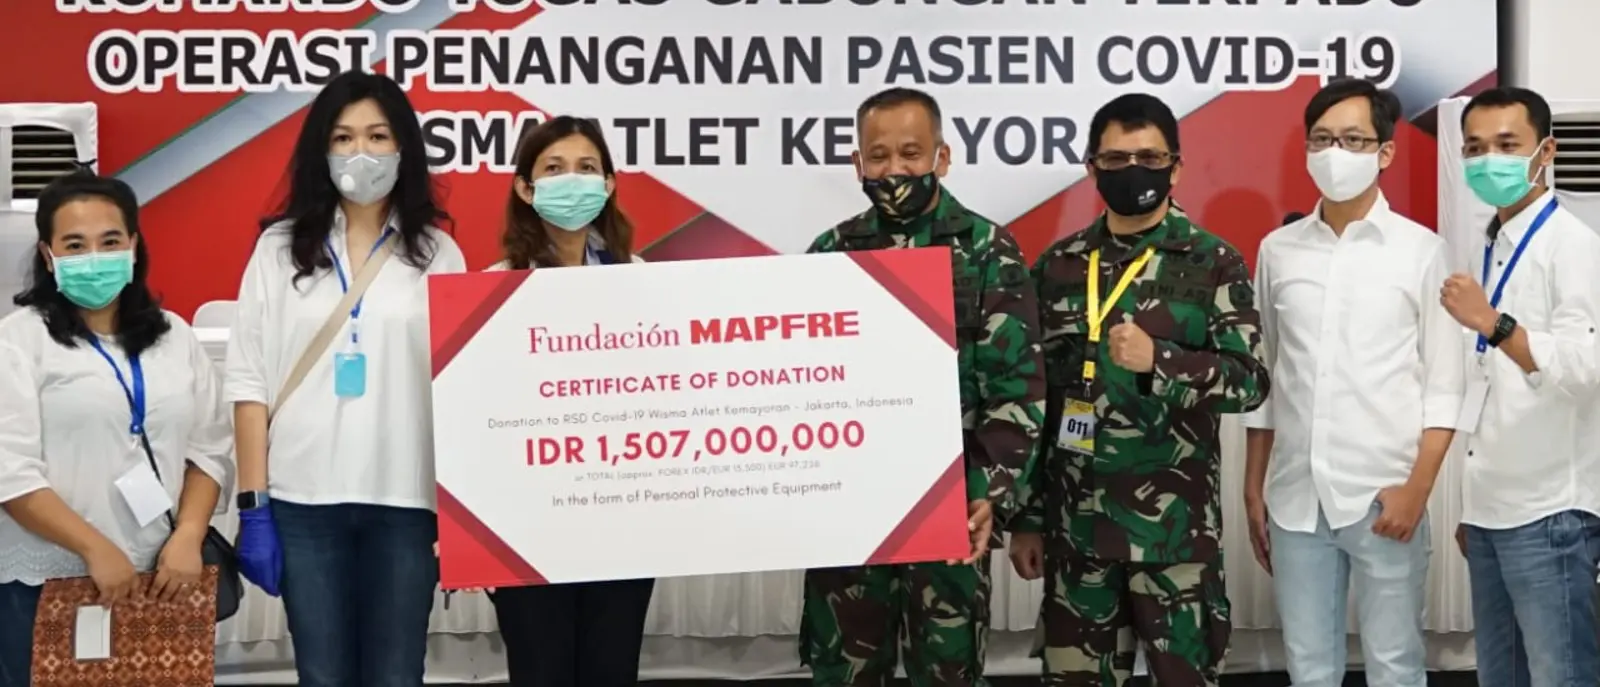 Indonesia: Donamos equipos para proteger a médicos y sanitarios del hospital Wisma Atlet Kemayoran